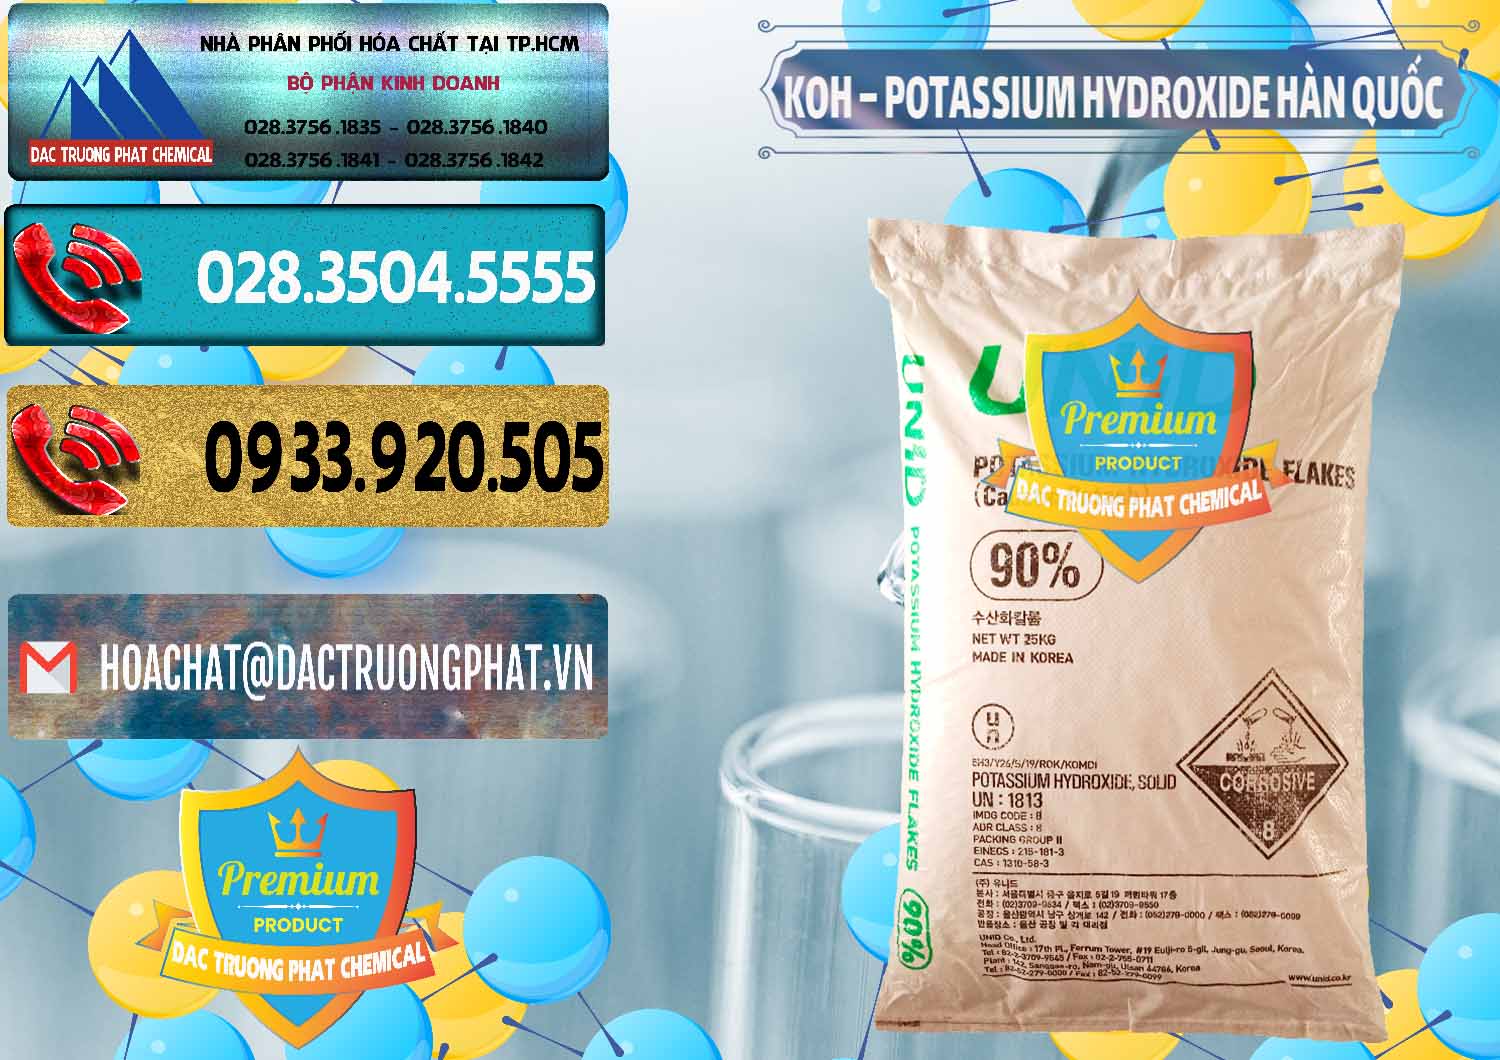 Cung cấp ( bán ) KOH ( 90%) – Potassium Hydroxide Unid Hàn Quốc Korea - 0090 - Công ty chuyên nhập khẩu và phân phối hóa chất tại TP.HCM - hoachatdetnhuom.com